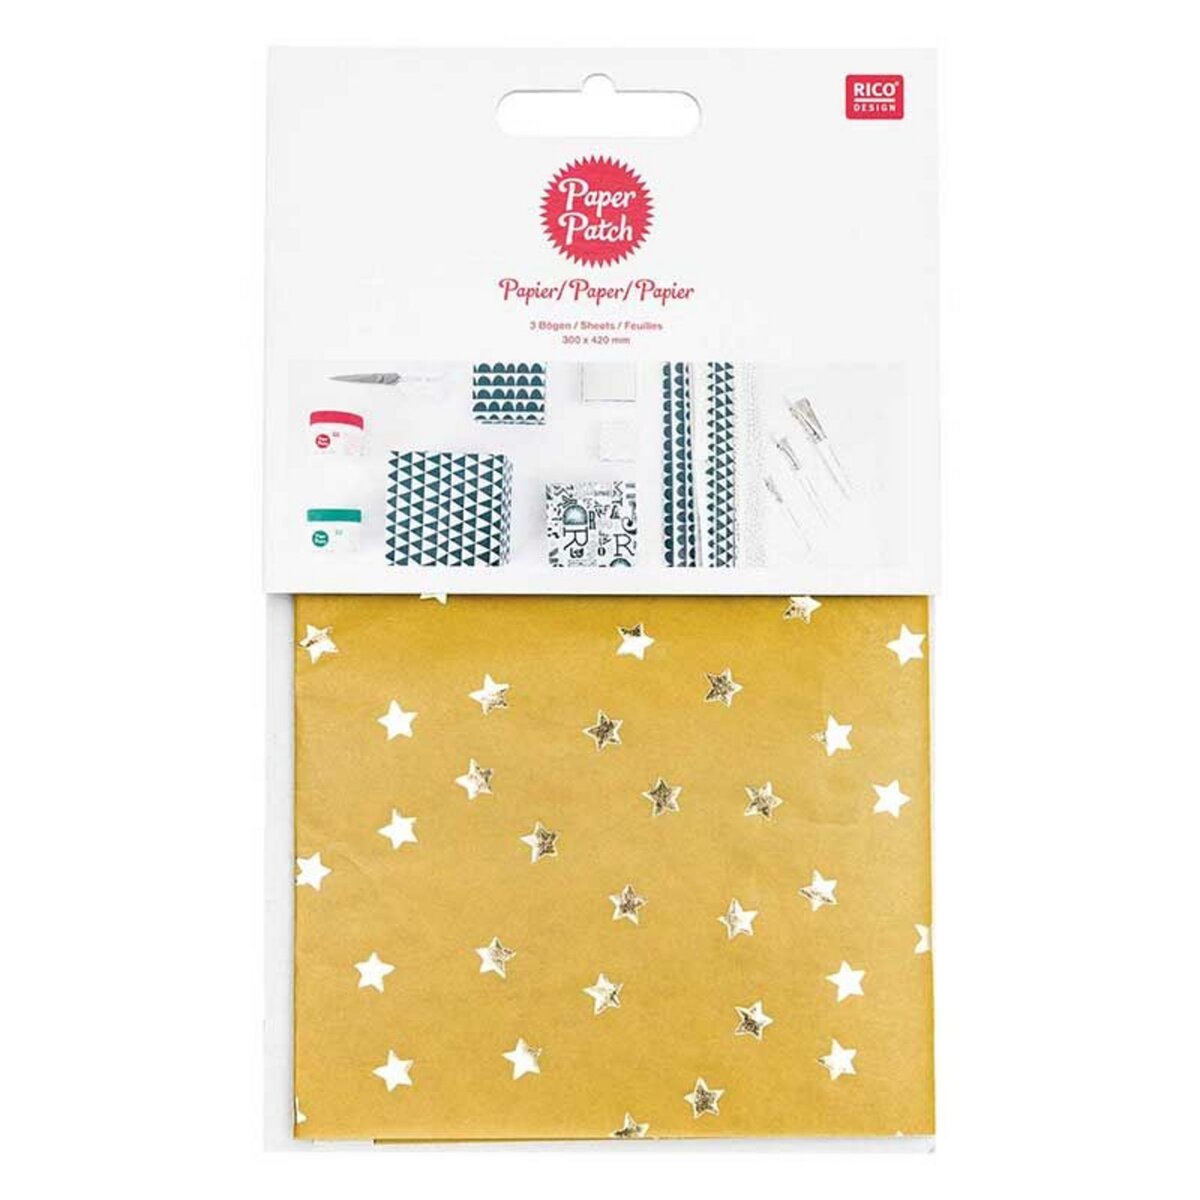 RICO DESIGN Papier patch Jaune étoiles dorées 30 x 42 cm